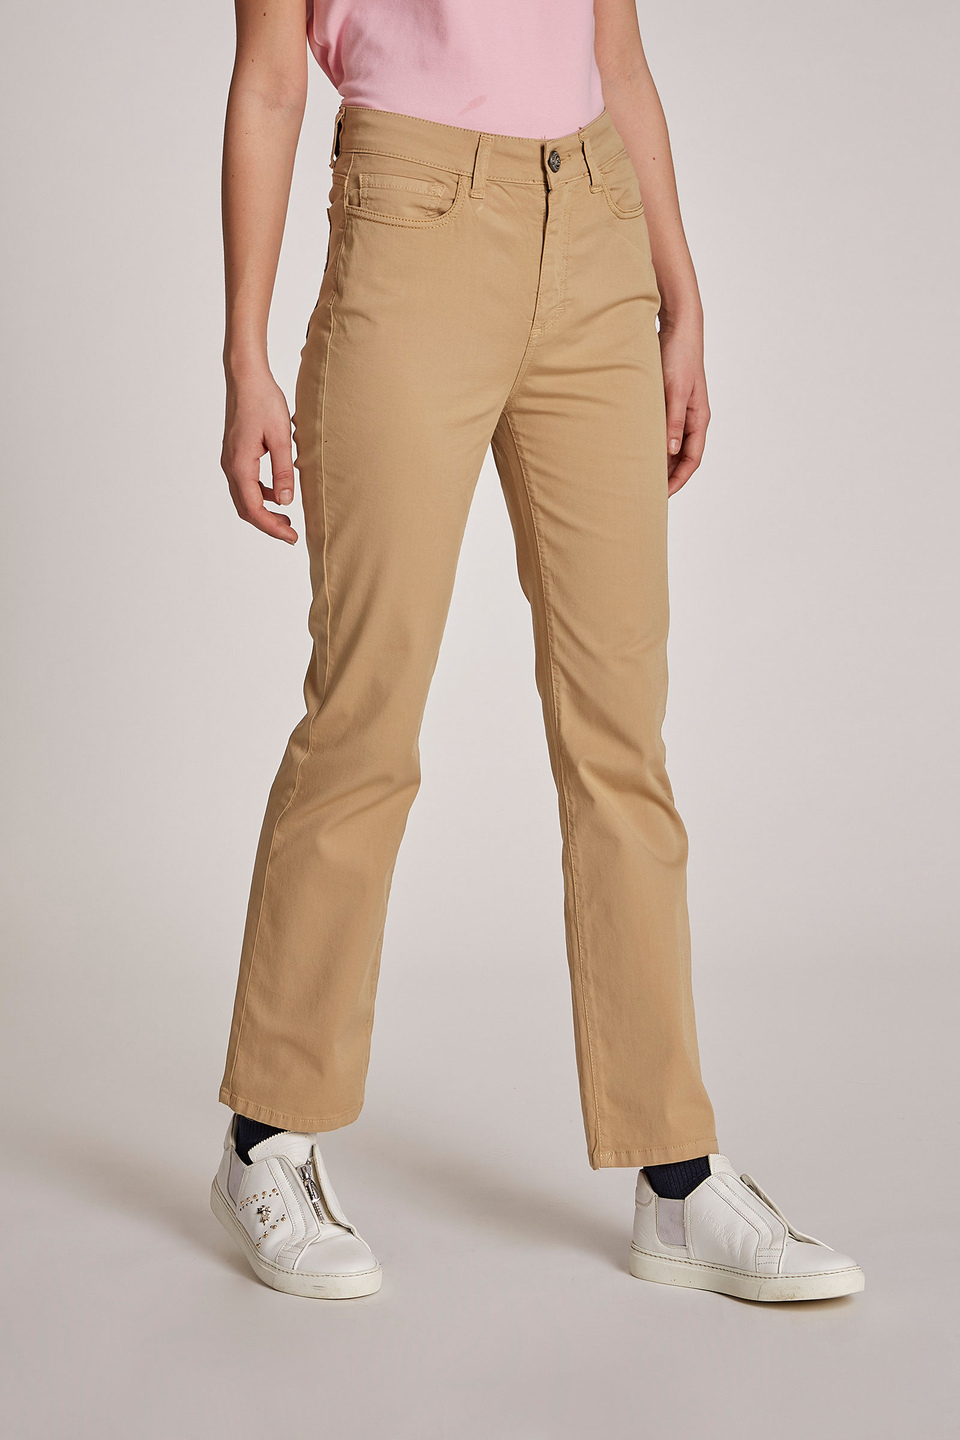 Pantalon femme en coton stretch, cinq poches et coupe classique - La Martina - Official Online Shop